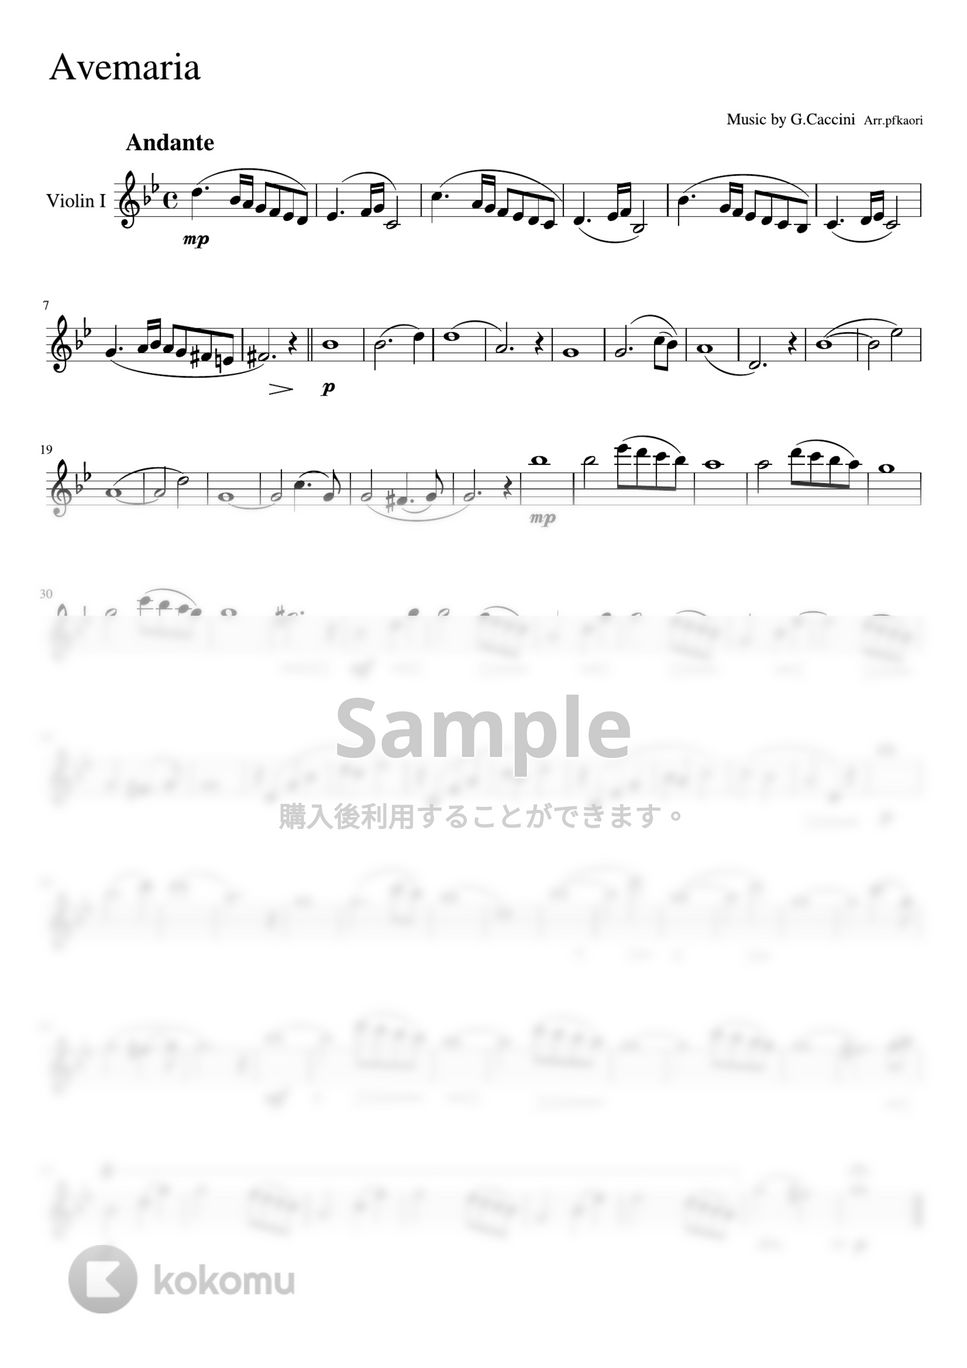 カッチーニ - アベマリア (Gm・バイオリン二重奏/無伴奏・パート譜) by pfkaori